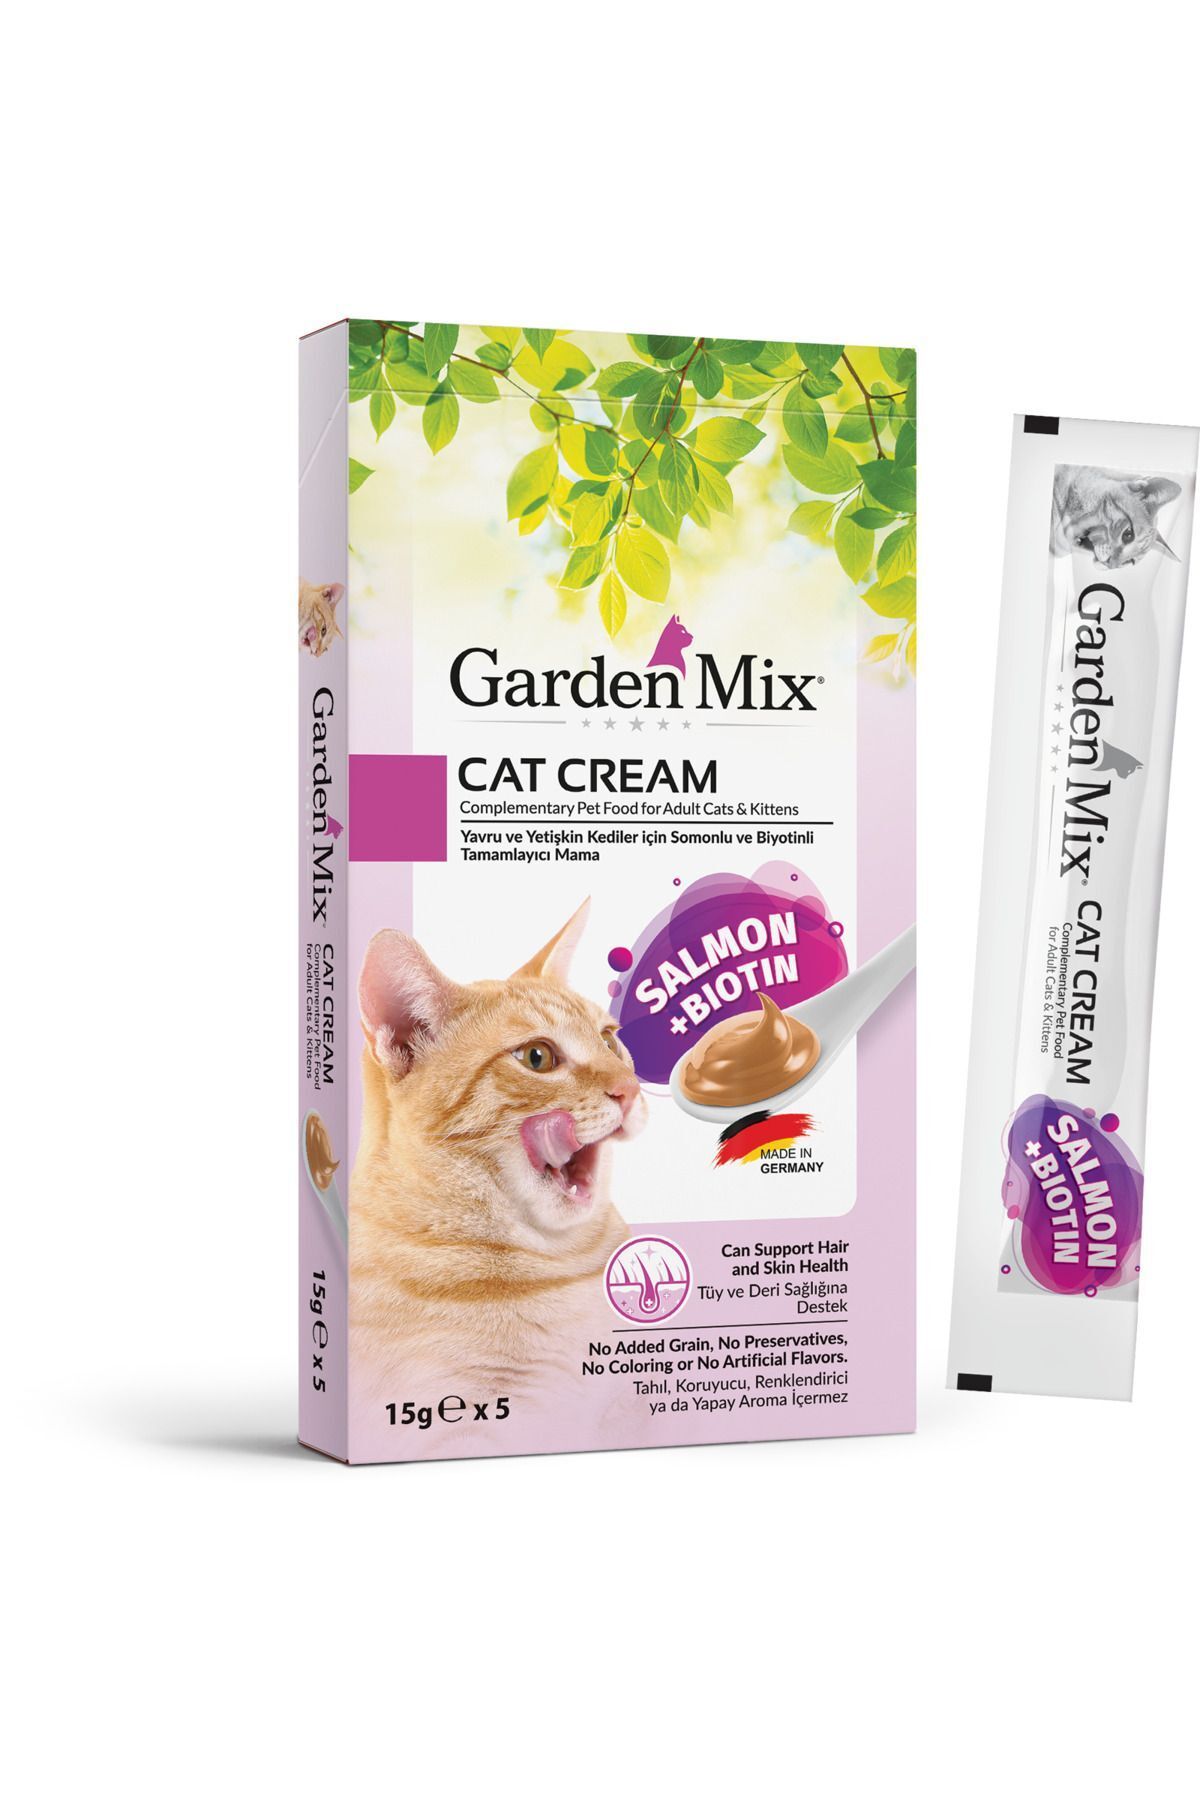 Garden Mix Kedi Kreması Somon Biotin 15grx5 Ad